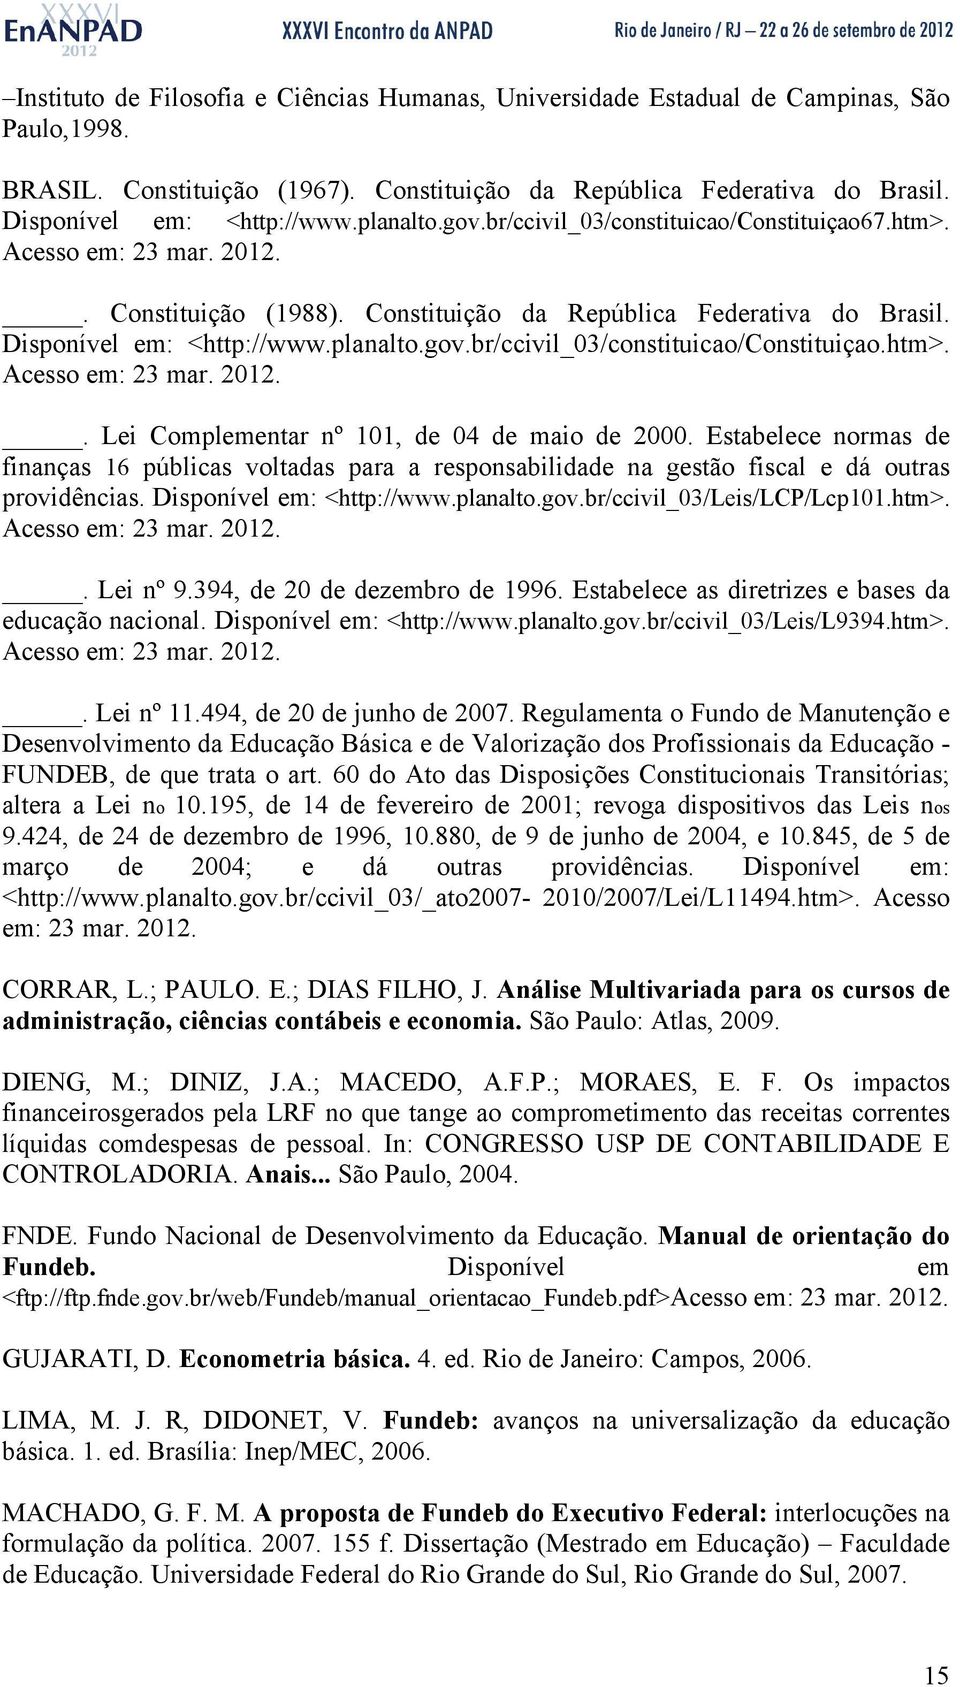 Estabelece normas de finanças 16 públicas voltadas para a responsabilidade na gestão fiscal e dá outras providências. Disponível em: <http://www.planalto.gov.br/ccivil_03/leis/lcp/lcp101.htm>.